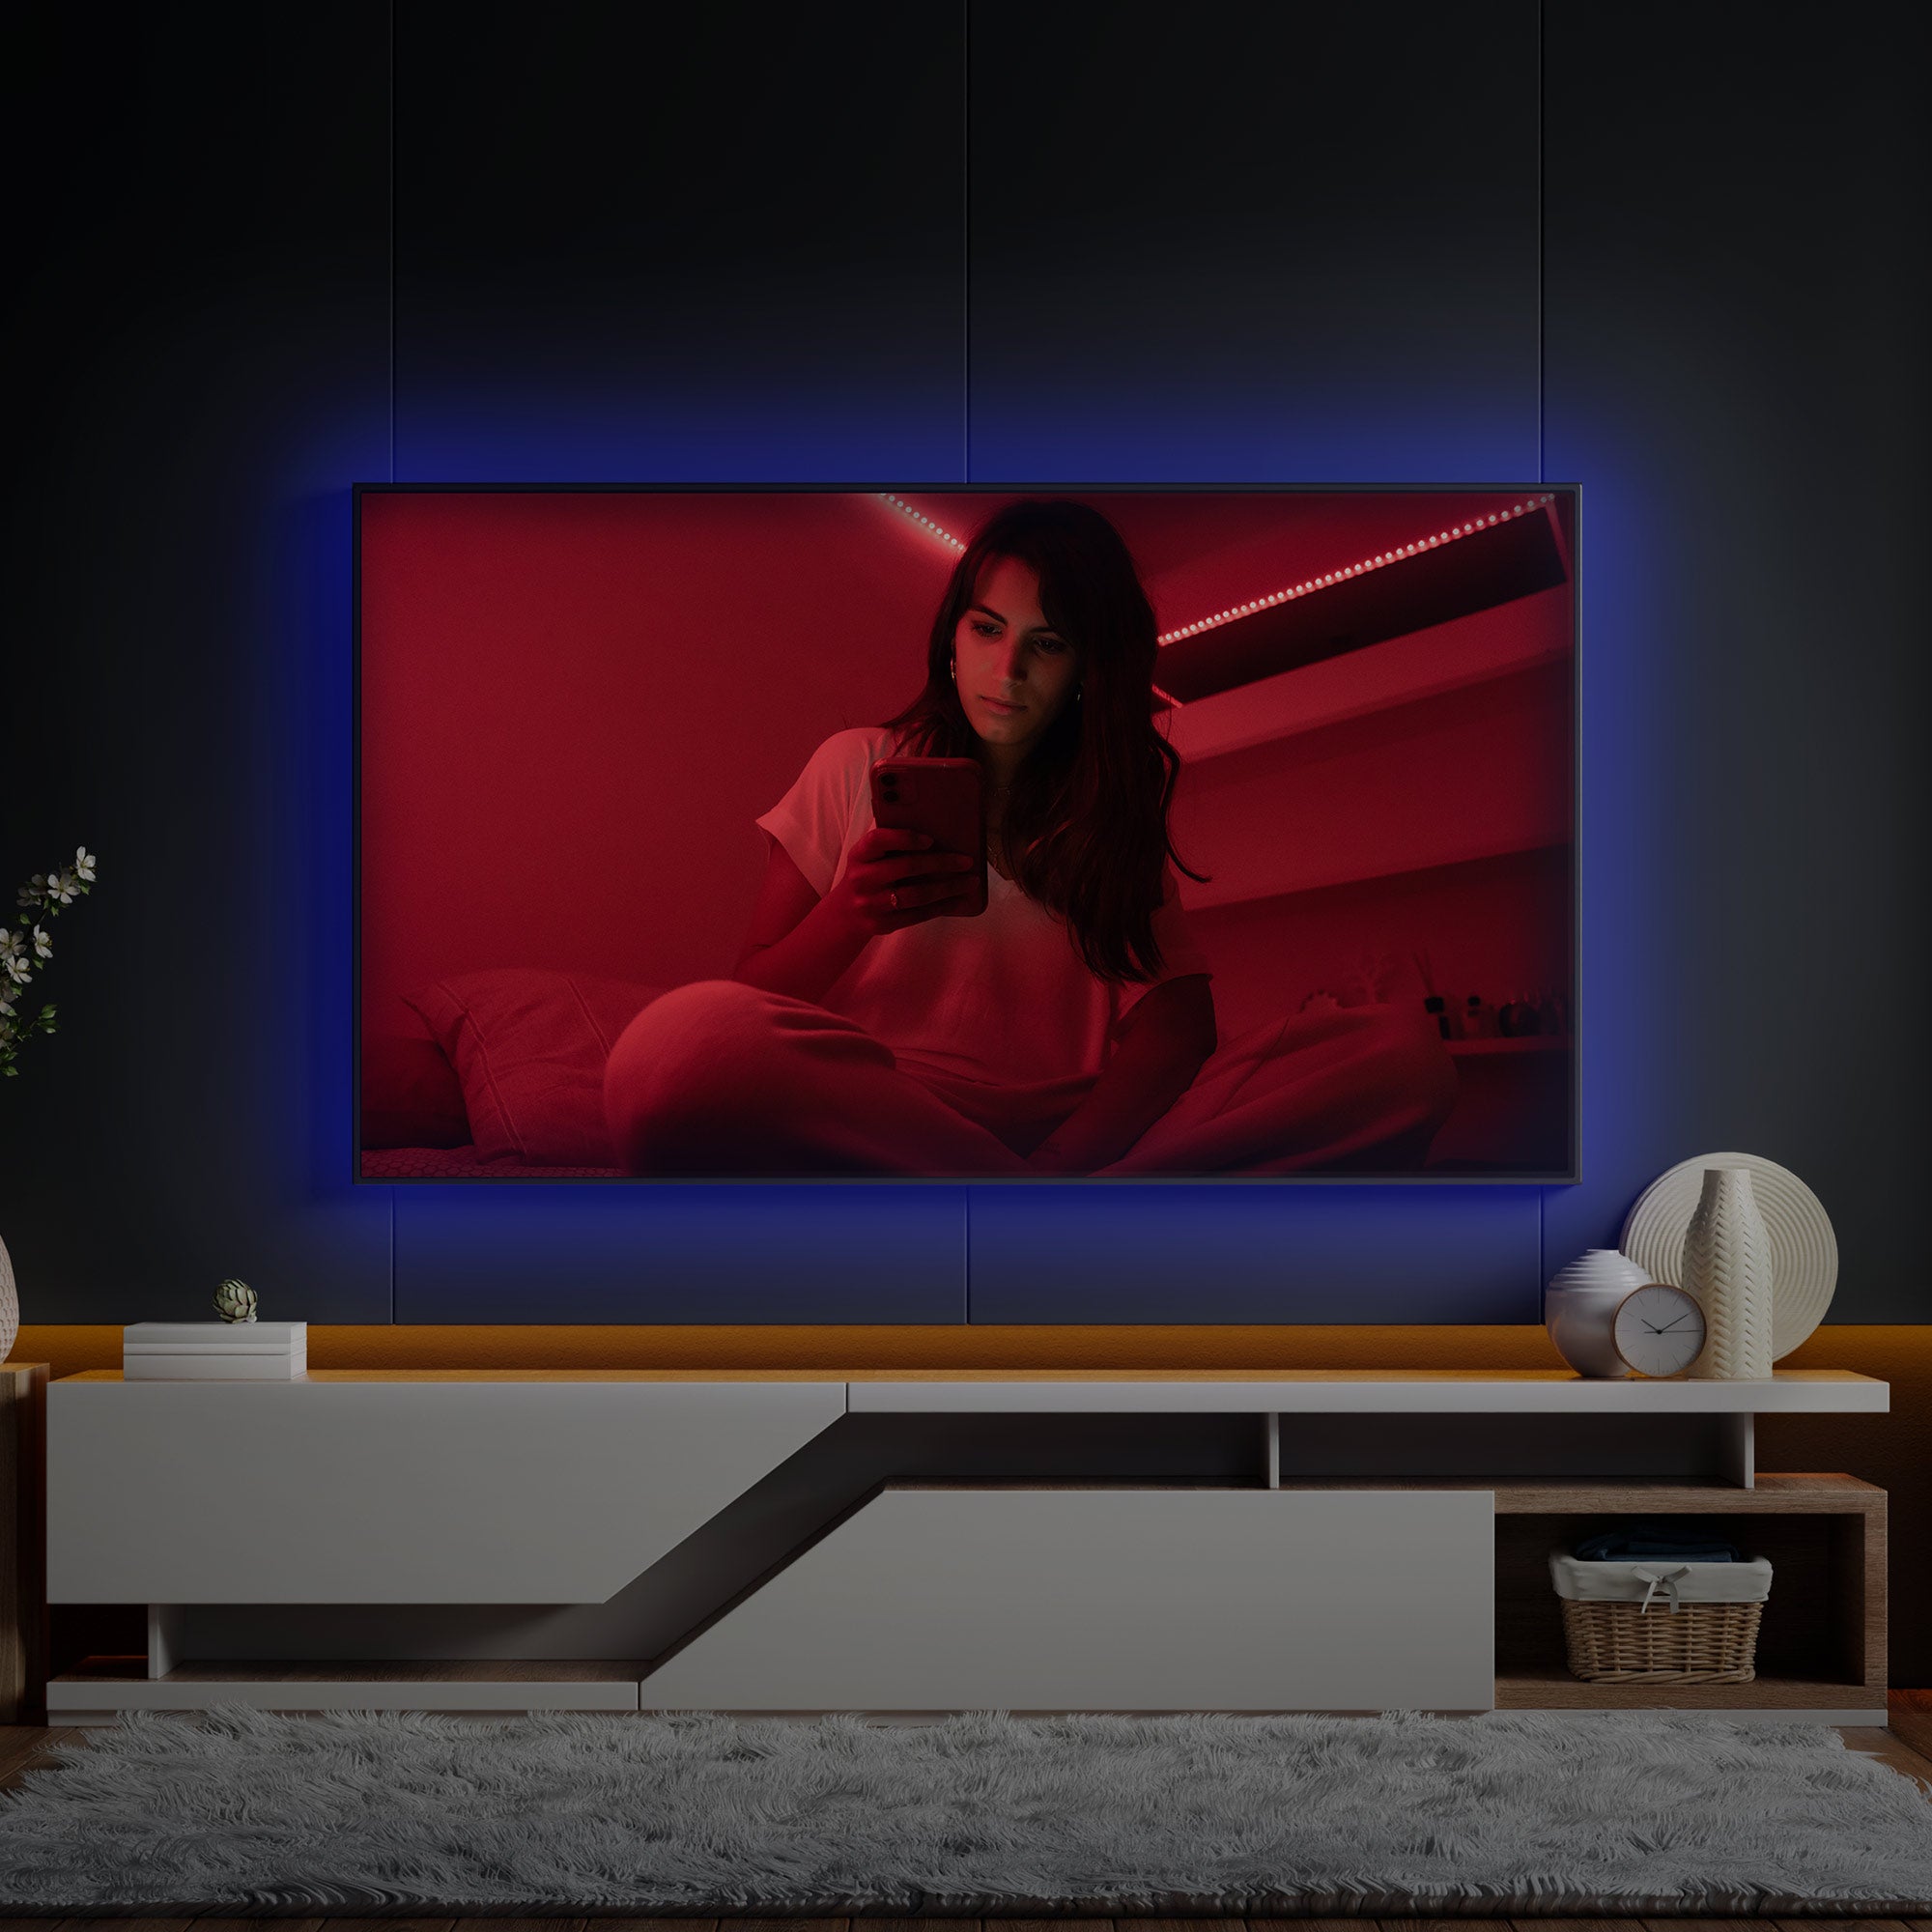 NOUS - Ruban de LED connecté RGB Bluetooth pour TV (3m)